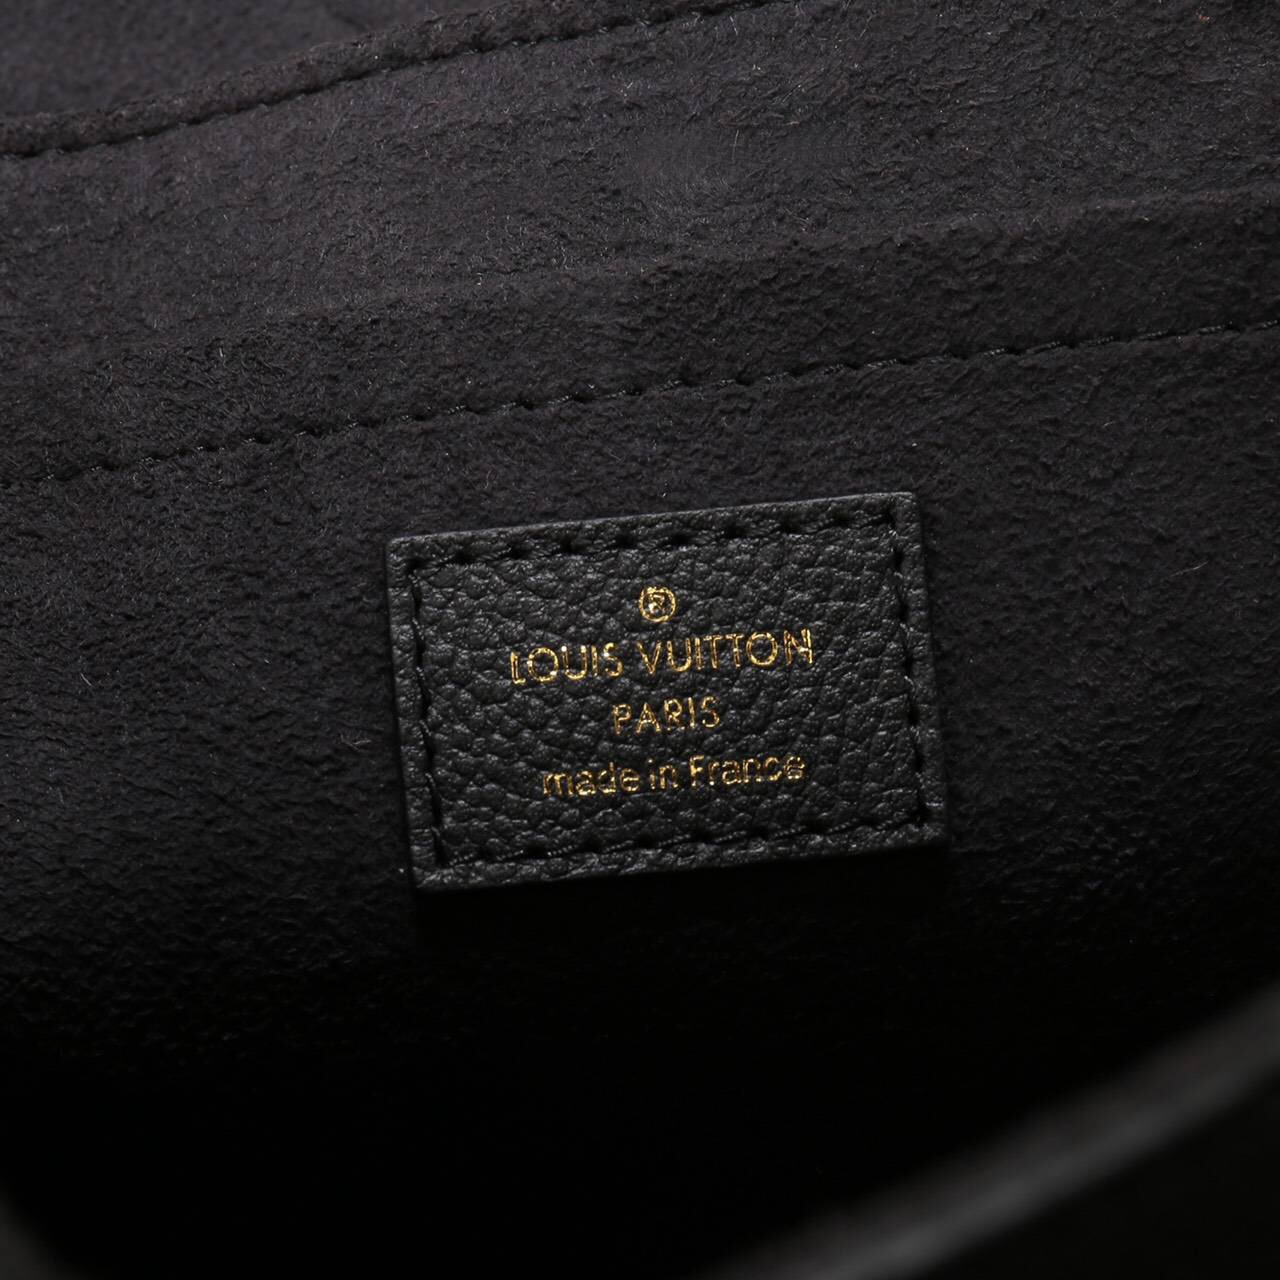 LV Louis Vuitton Saint Sulpice Monogram Real M43392 Leather Handbags bags Black